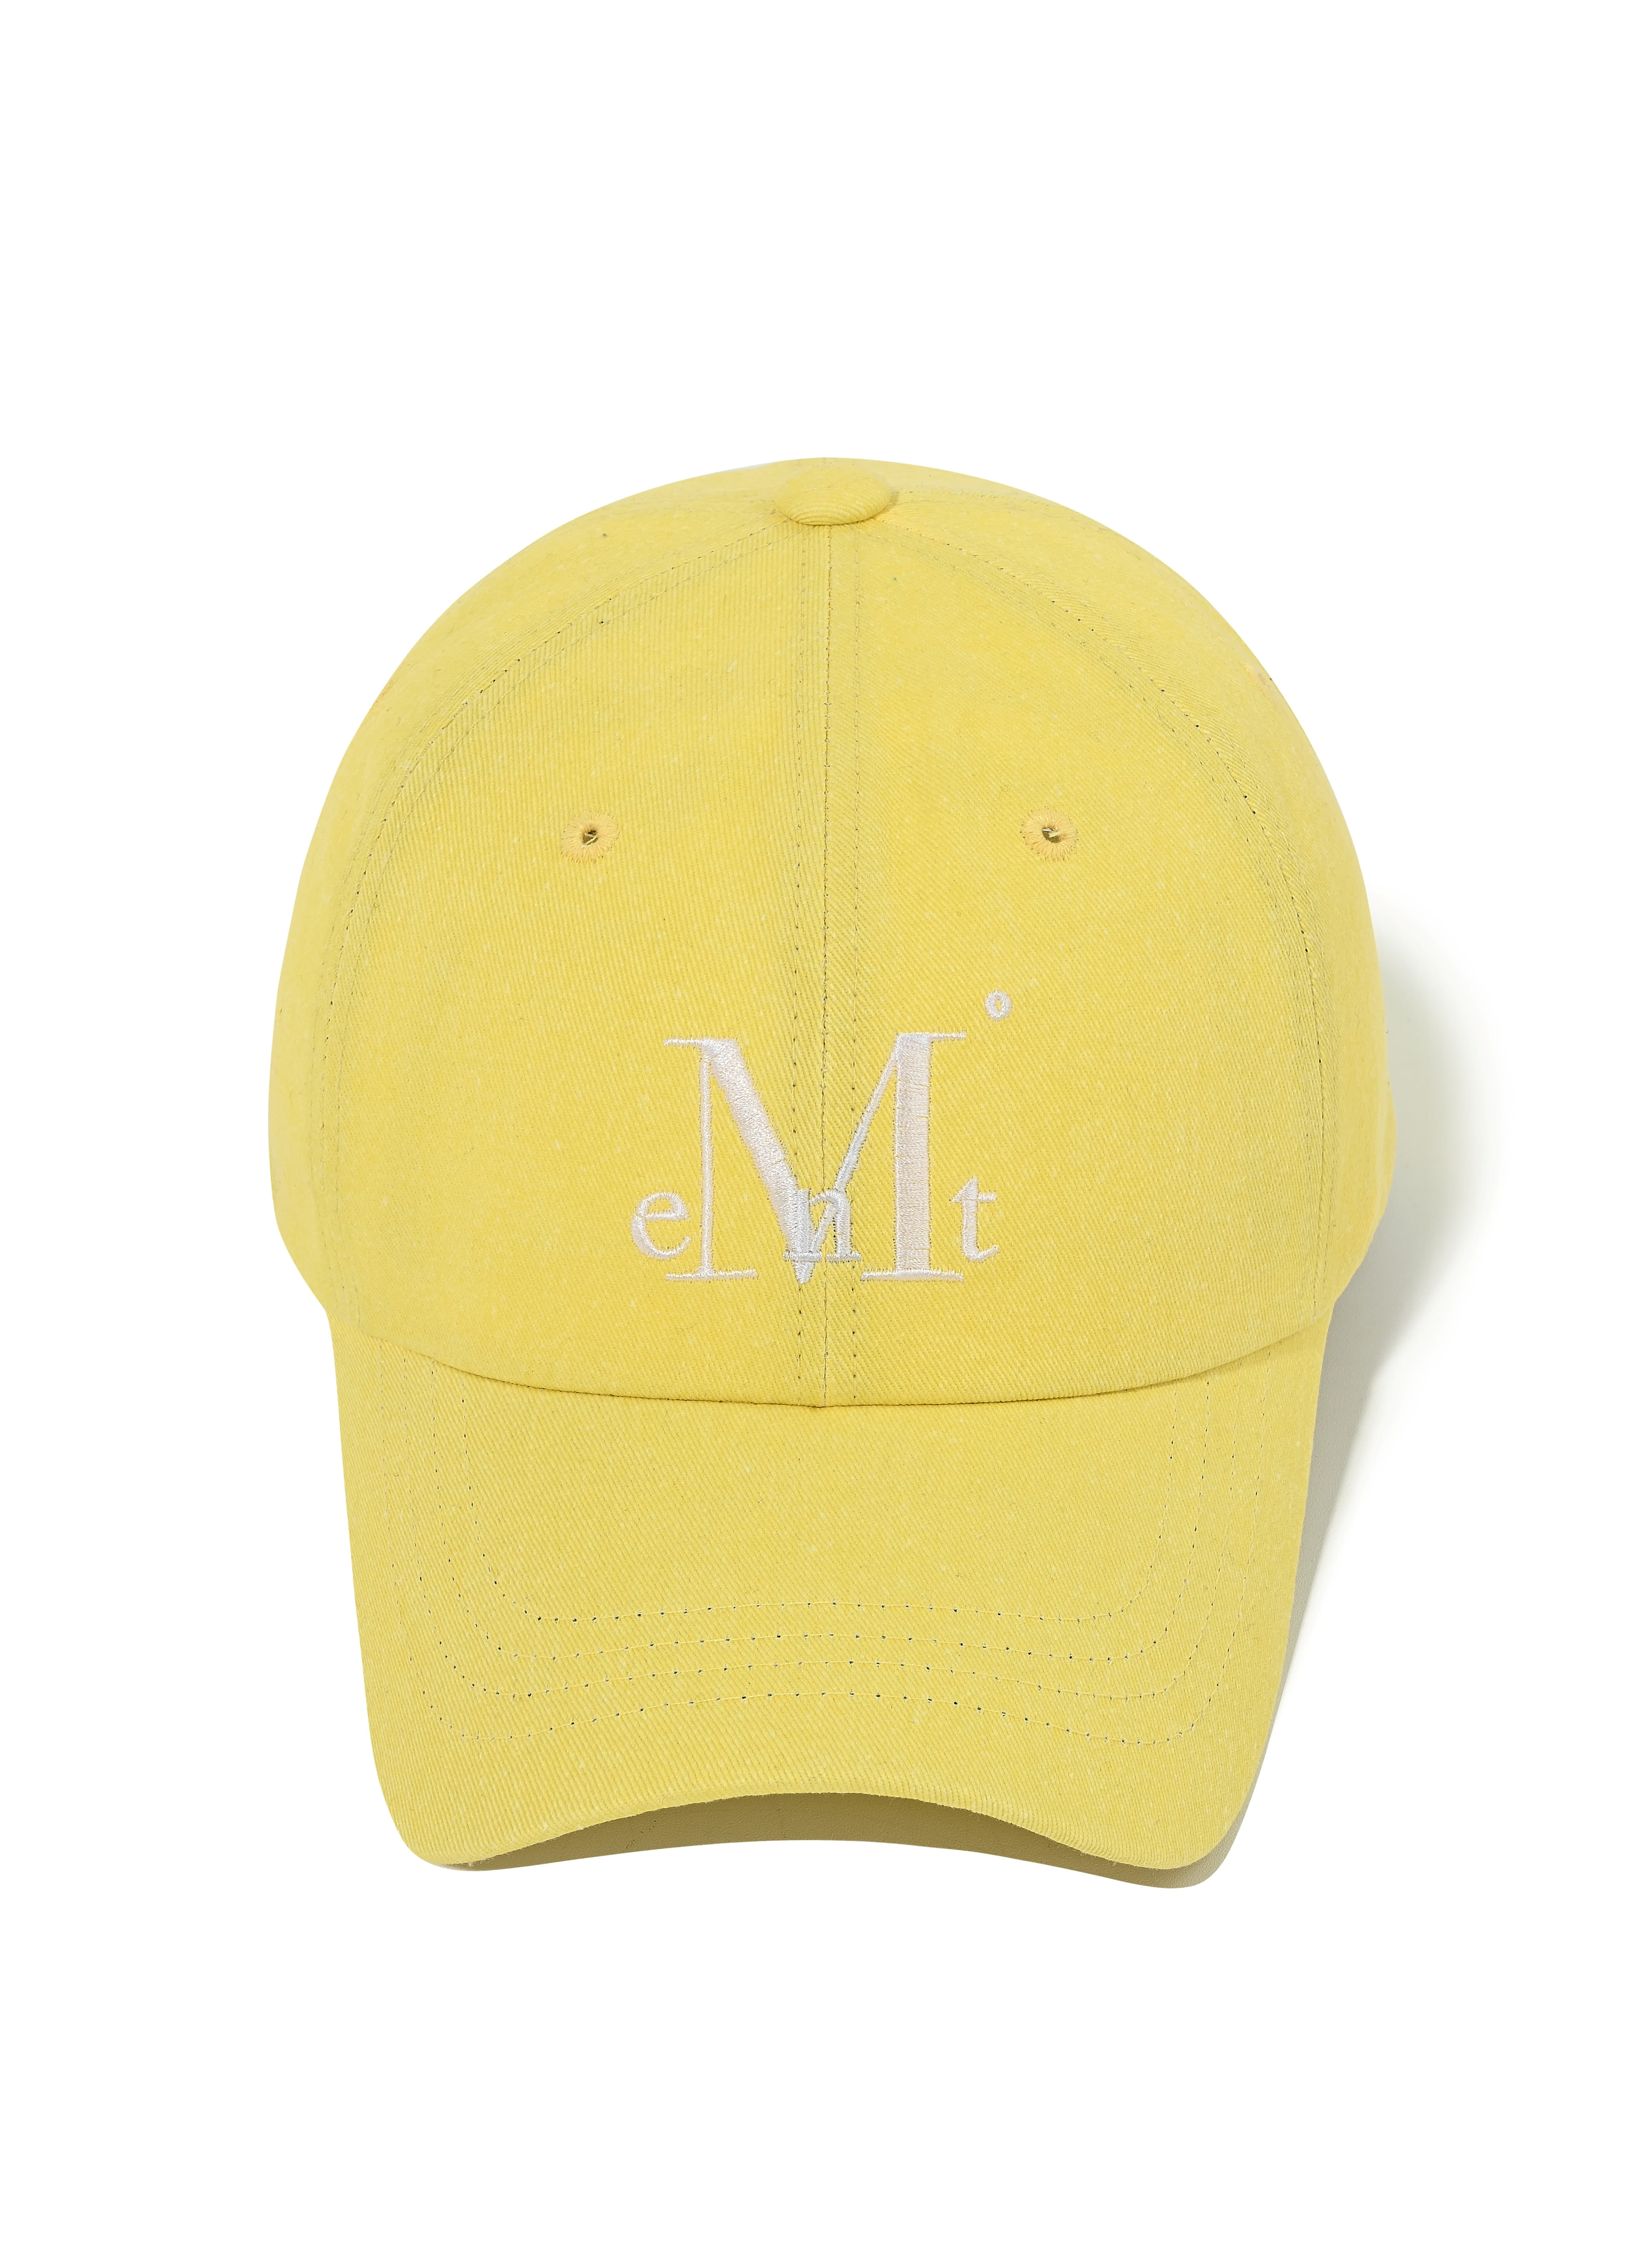 MUCENT BALL CAP - 무센트 볼캡 (Honey lemon)